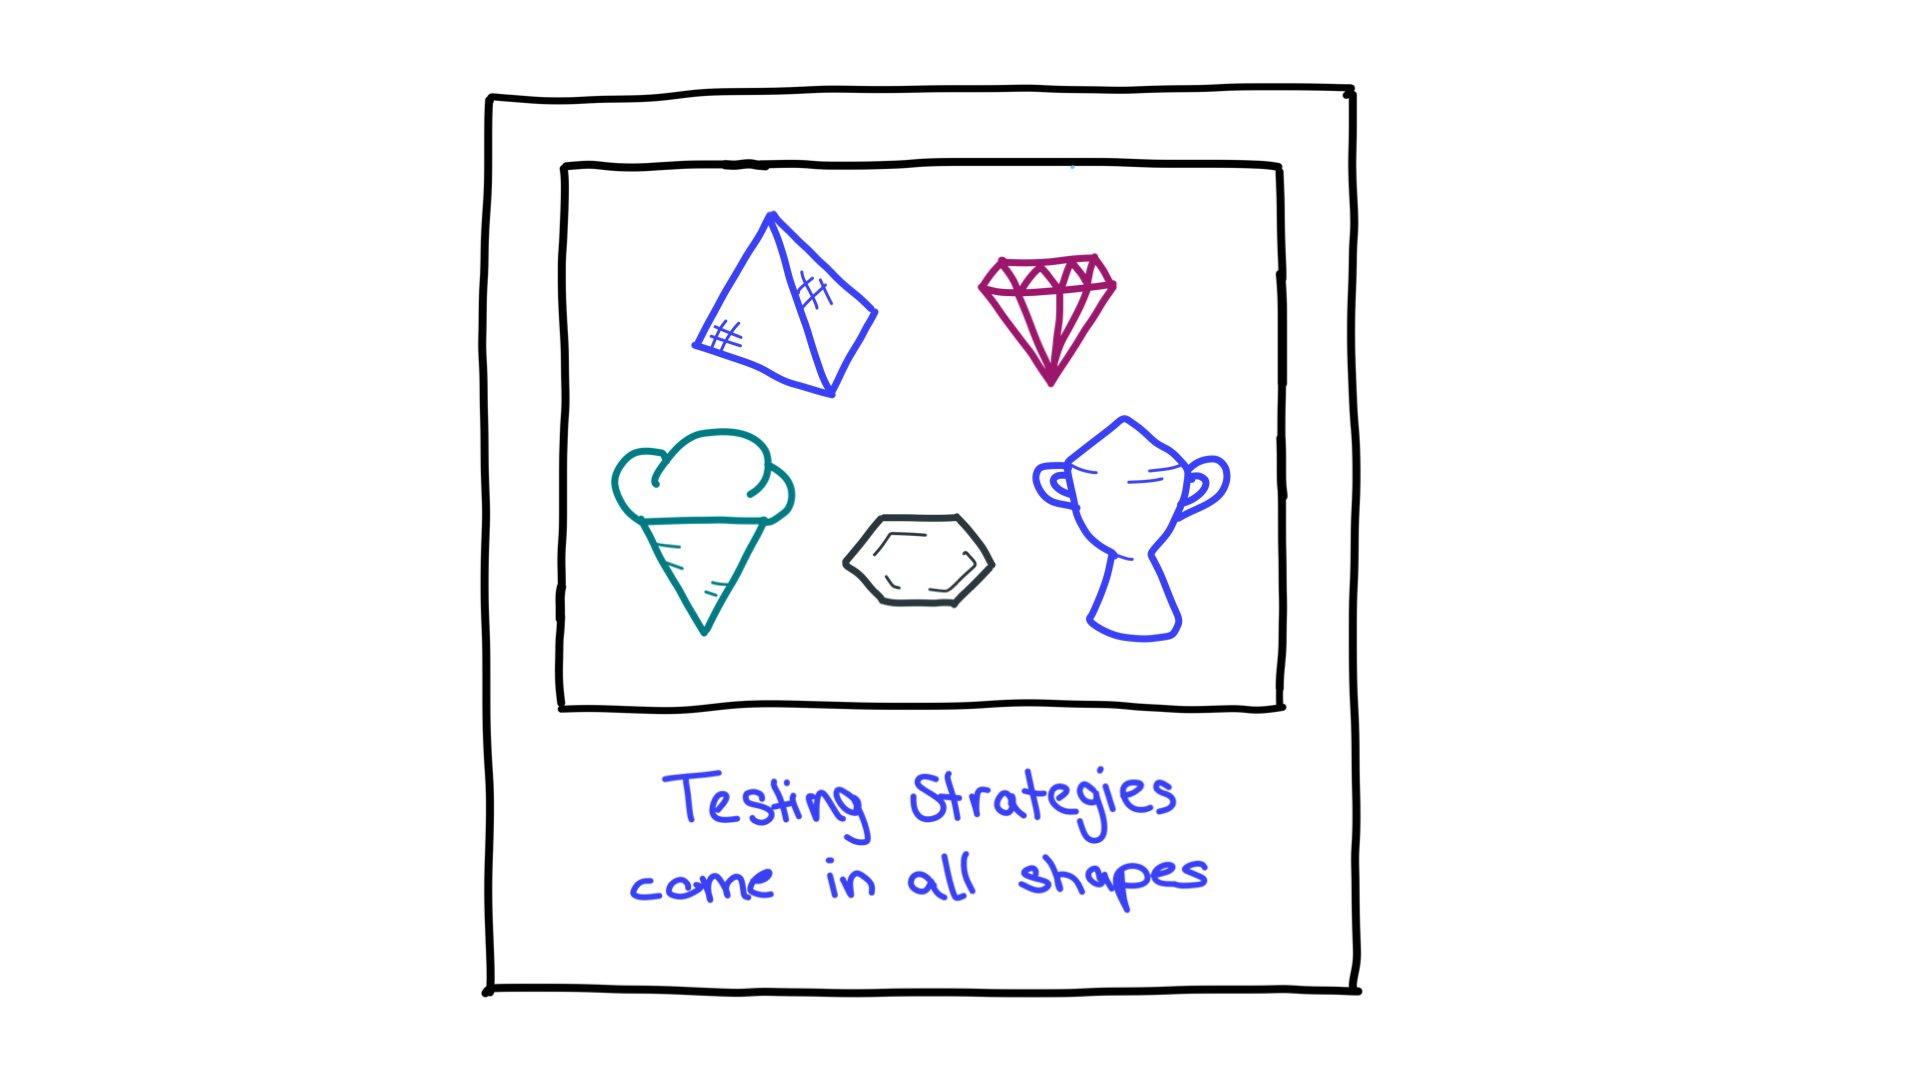 テスト戦略の形状の例としては、ピラミッド、ダイヤモンドのカット、アイスクリーム コーン、六角形、トロフィーなどがあります。